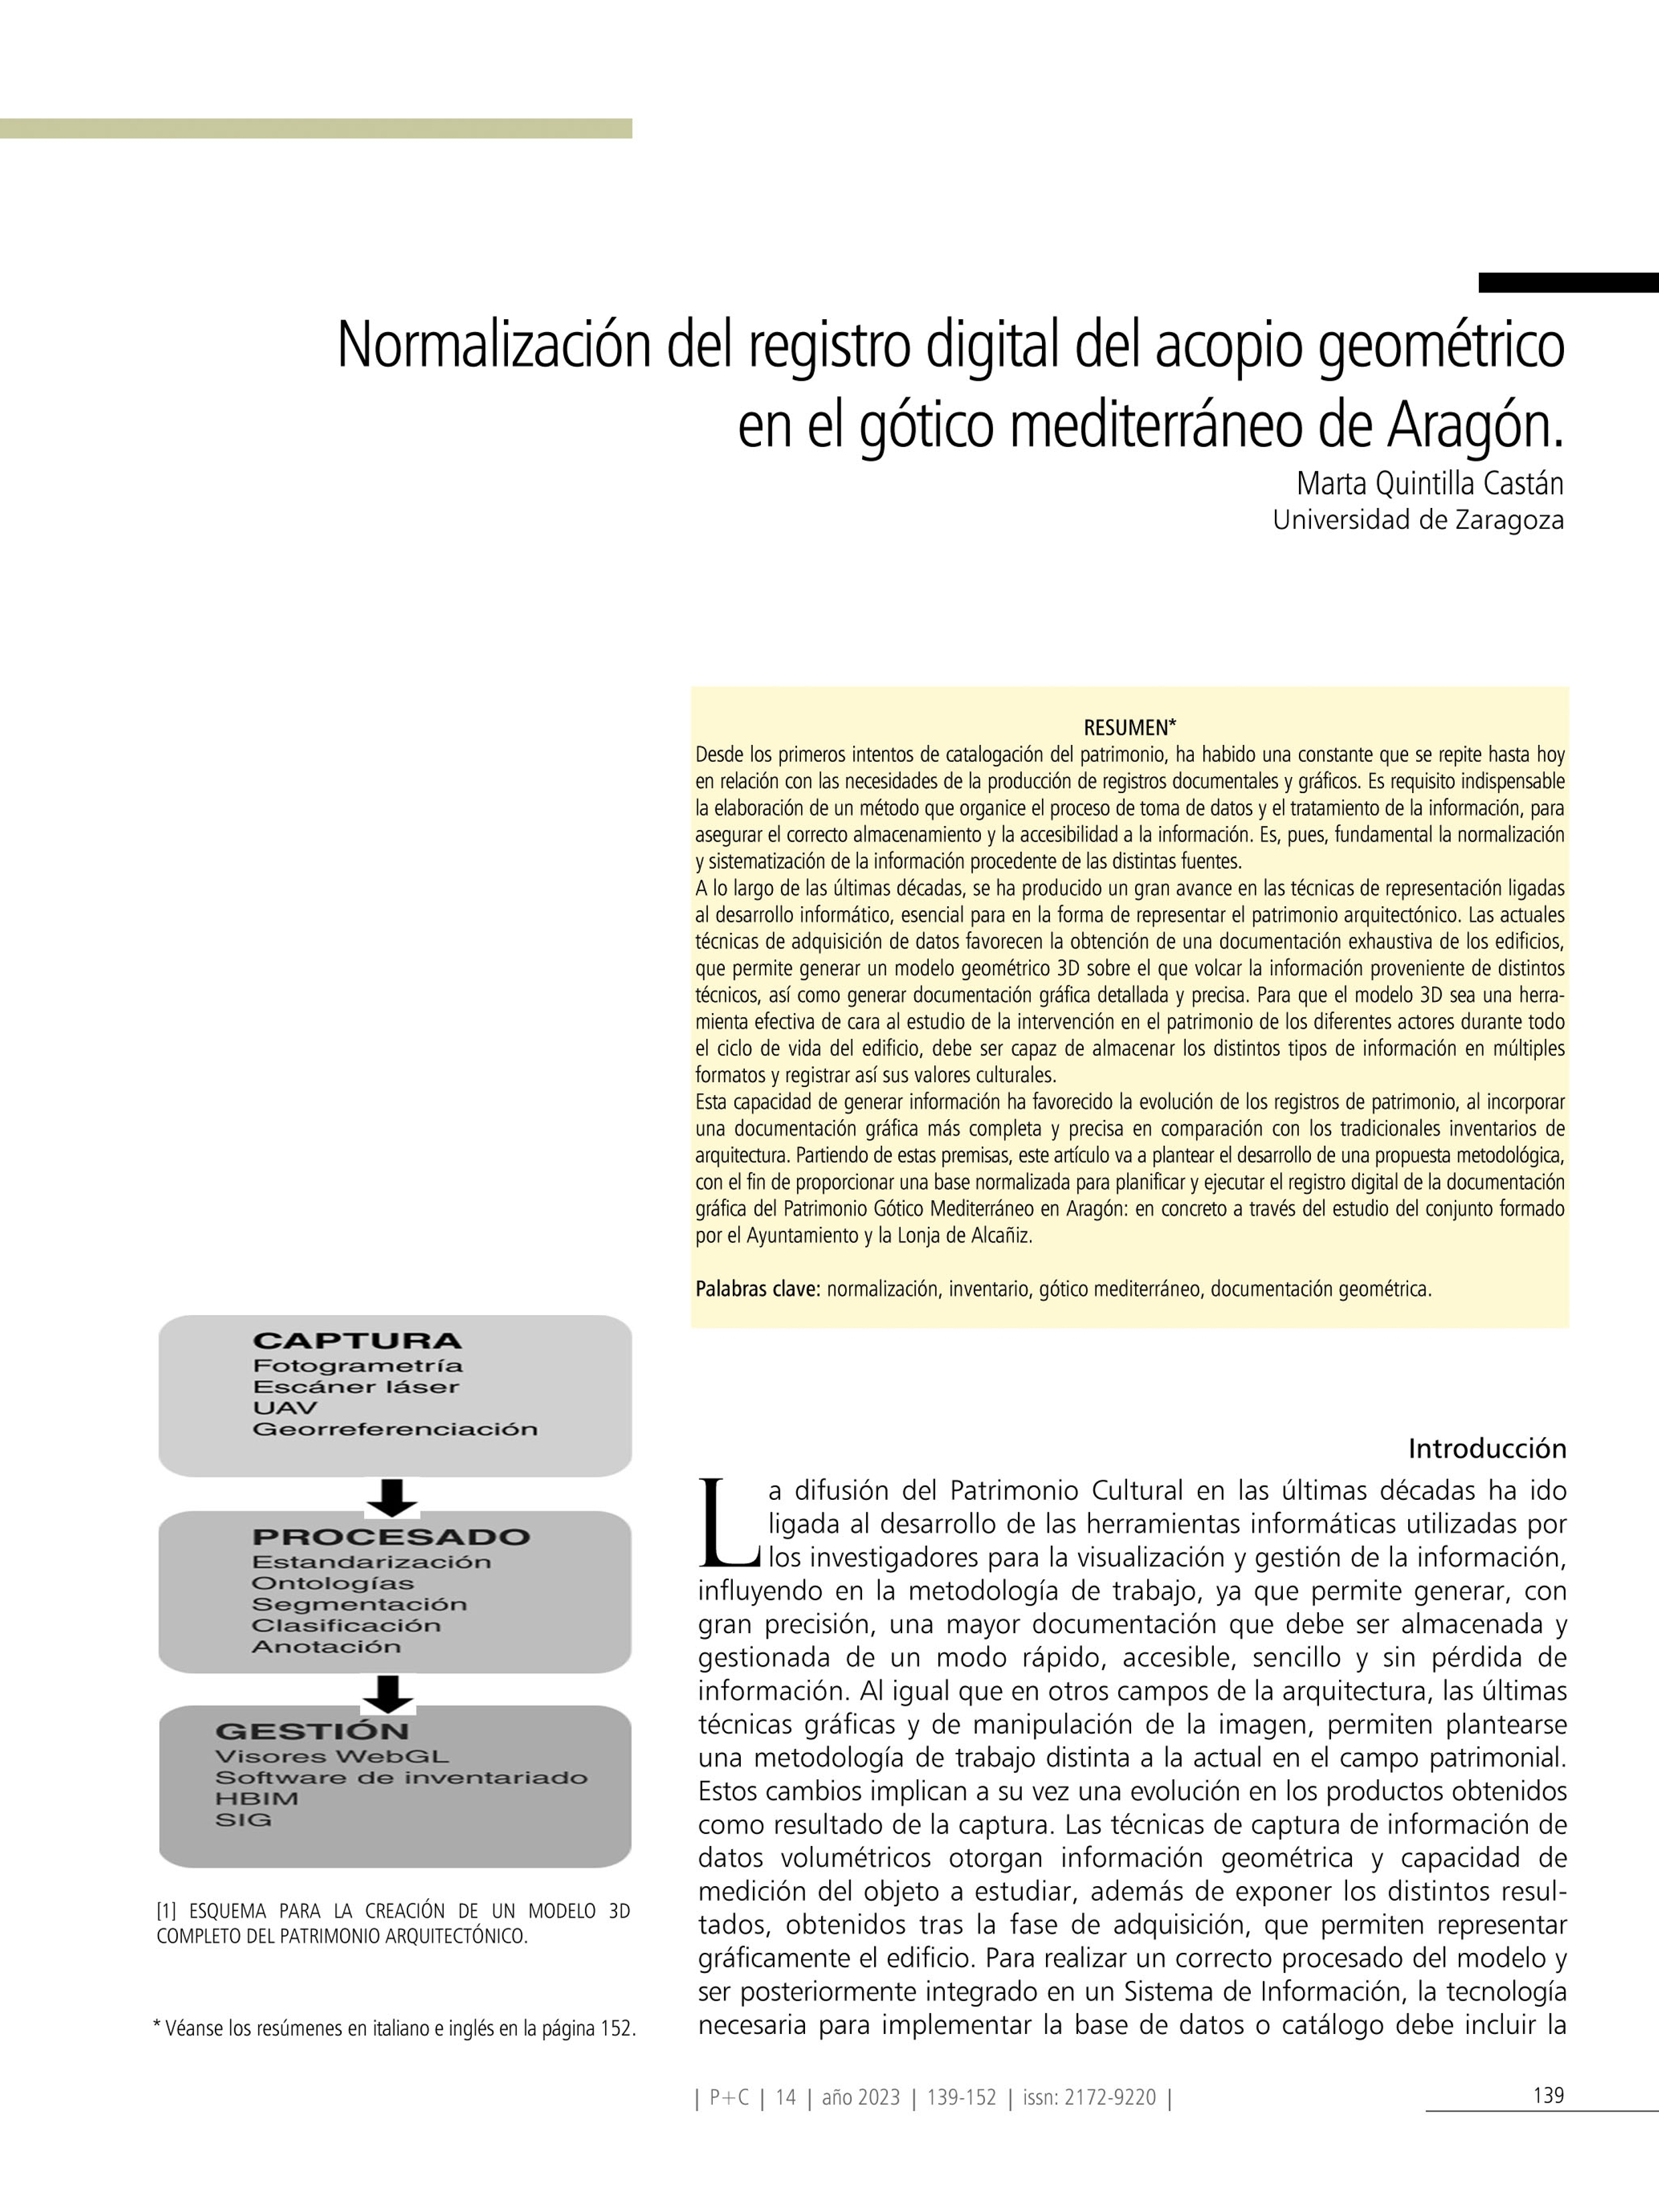 Normalización del registro digital del acopio geométrico en el gótico mediterráneo de Aragón